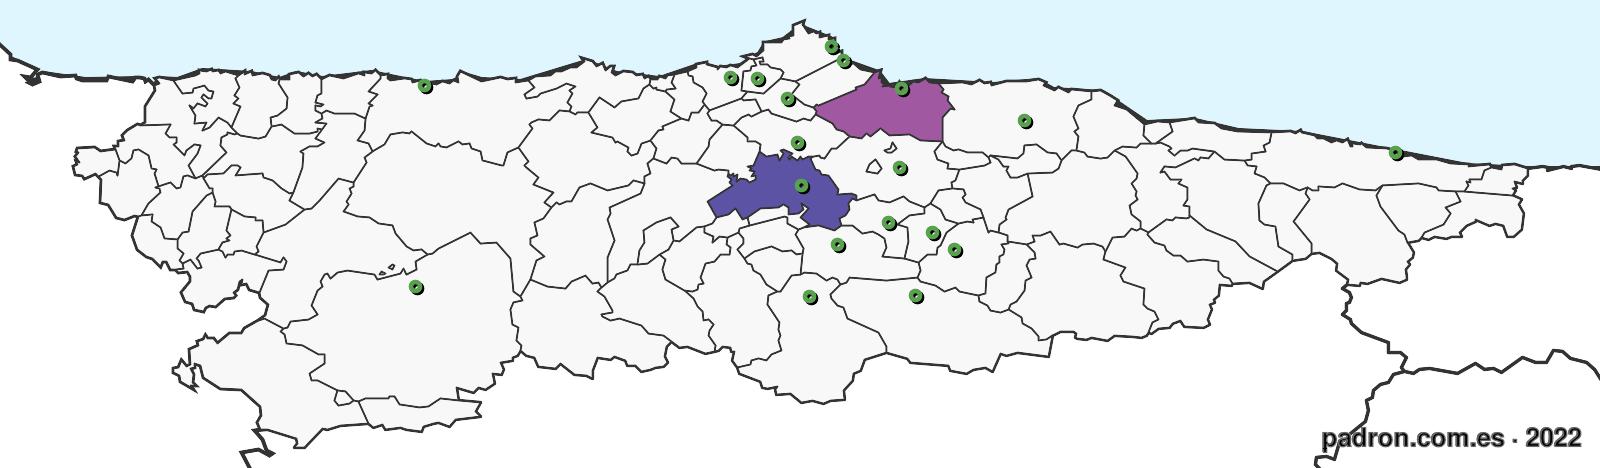 tanzanos en asturias.